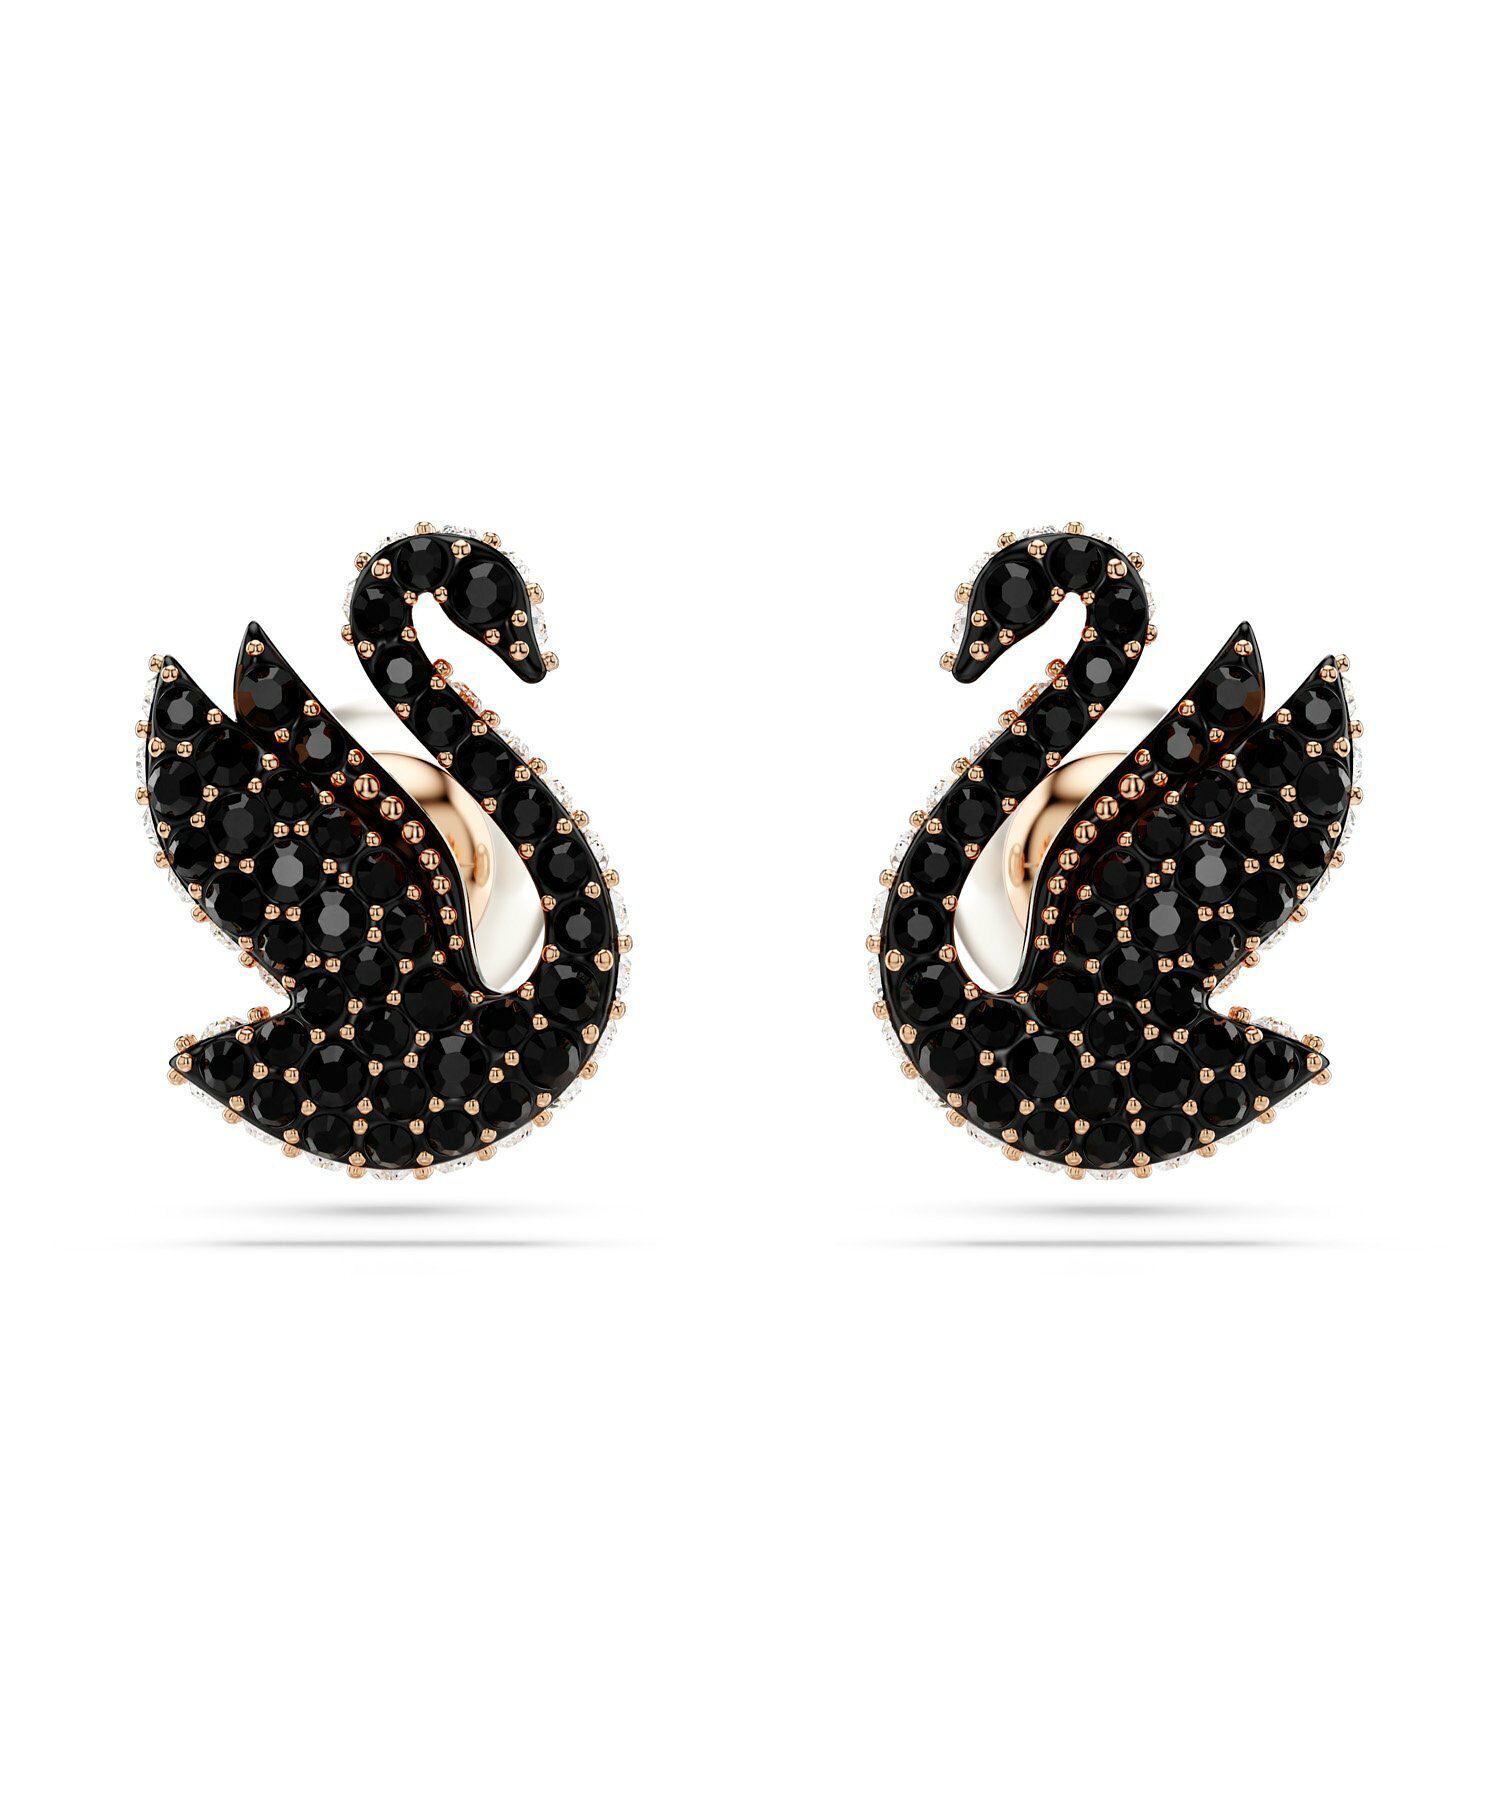 【公式】【スワロフスキー】Swarovski Iconic Swan スタッドピアス